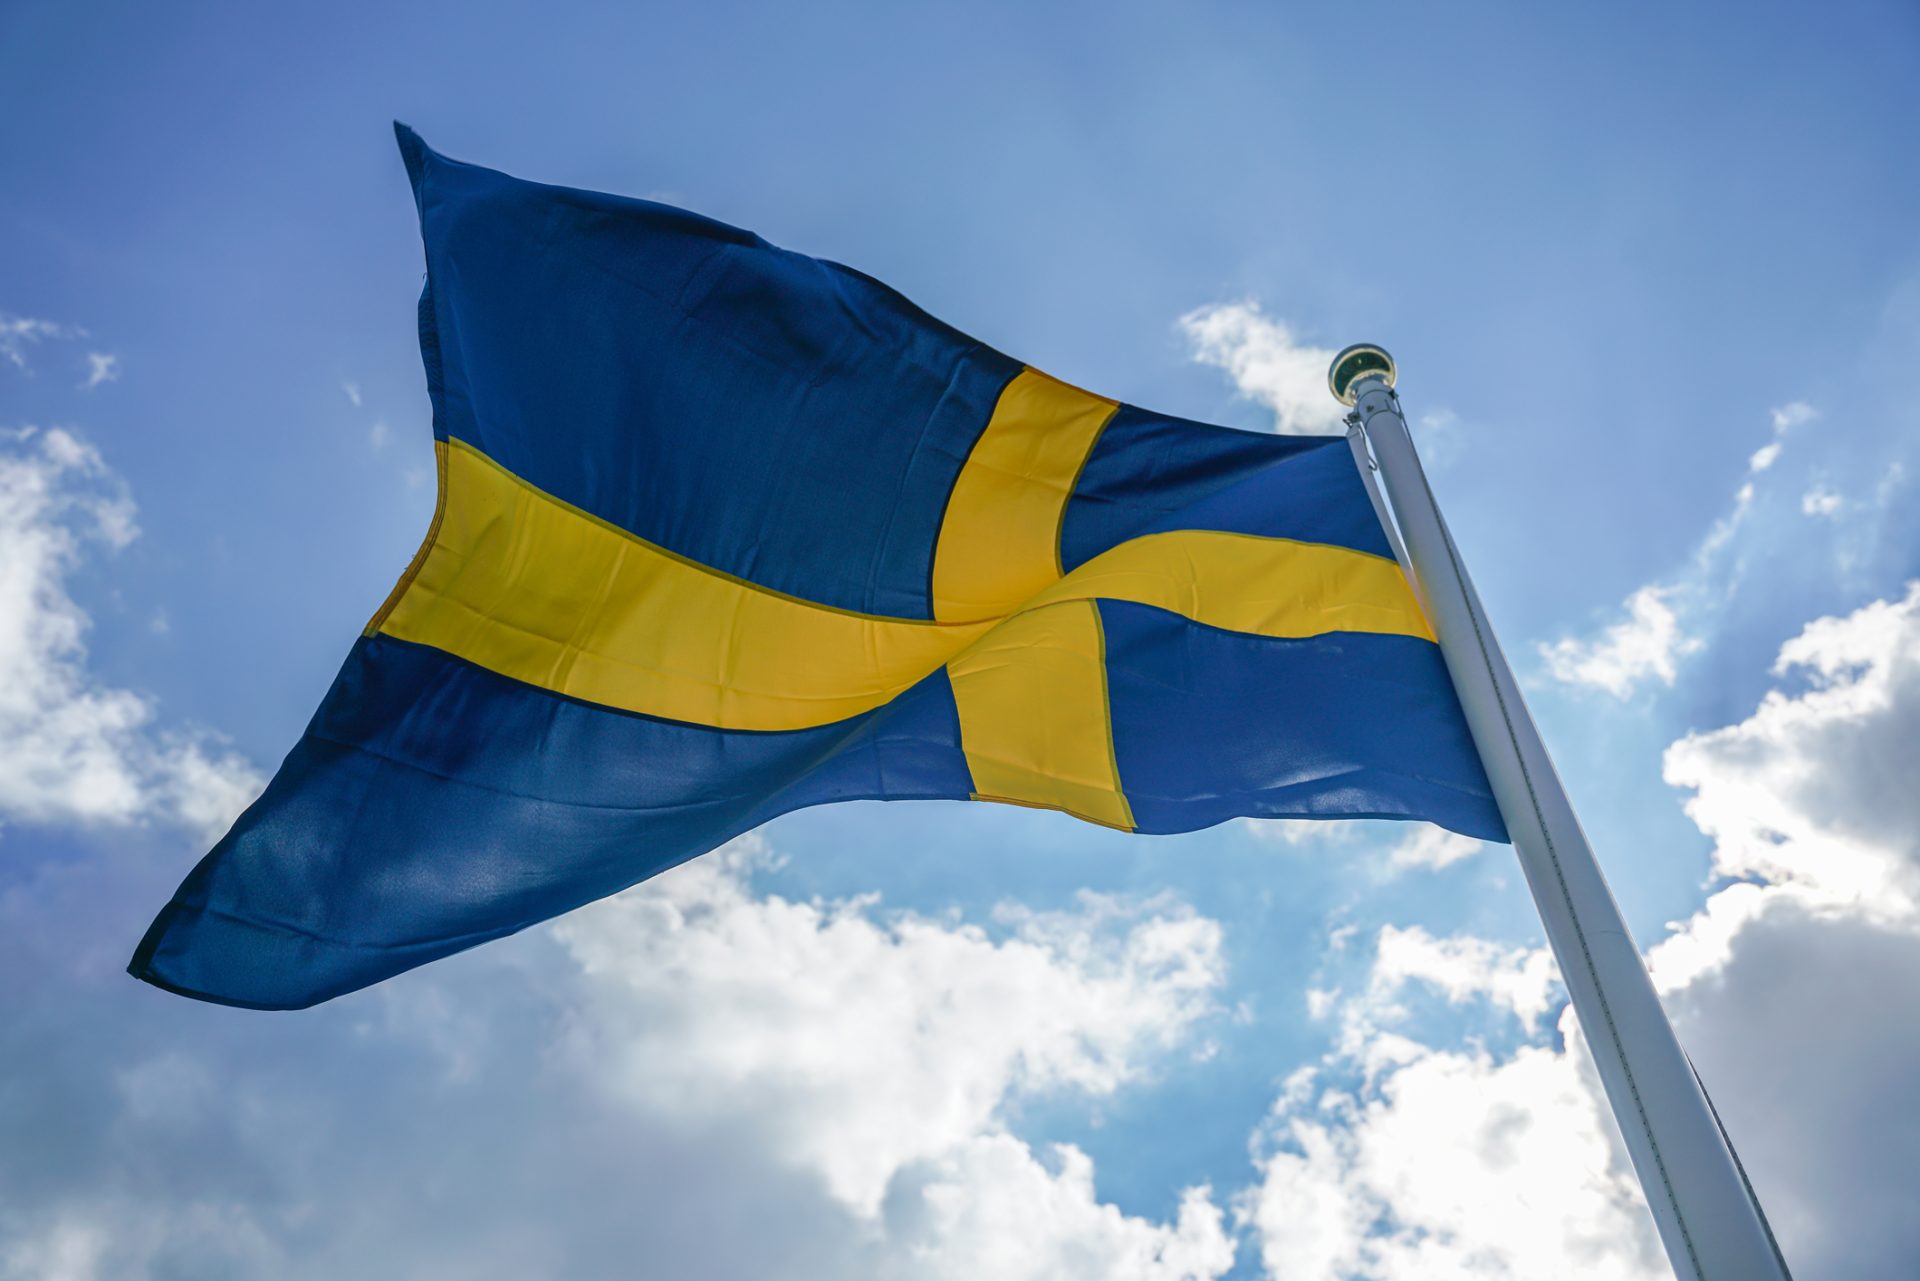 Oito feridos em esfaqueamento na Suécia. Autoridades não descartam atentado terrorista